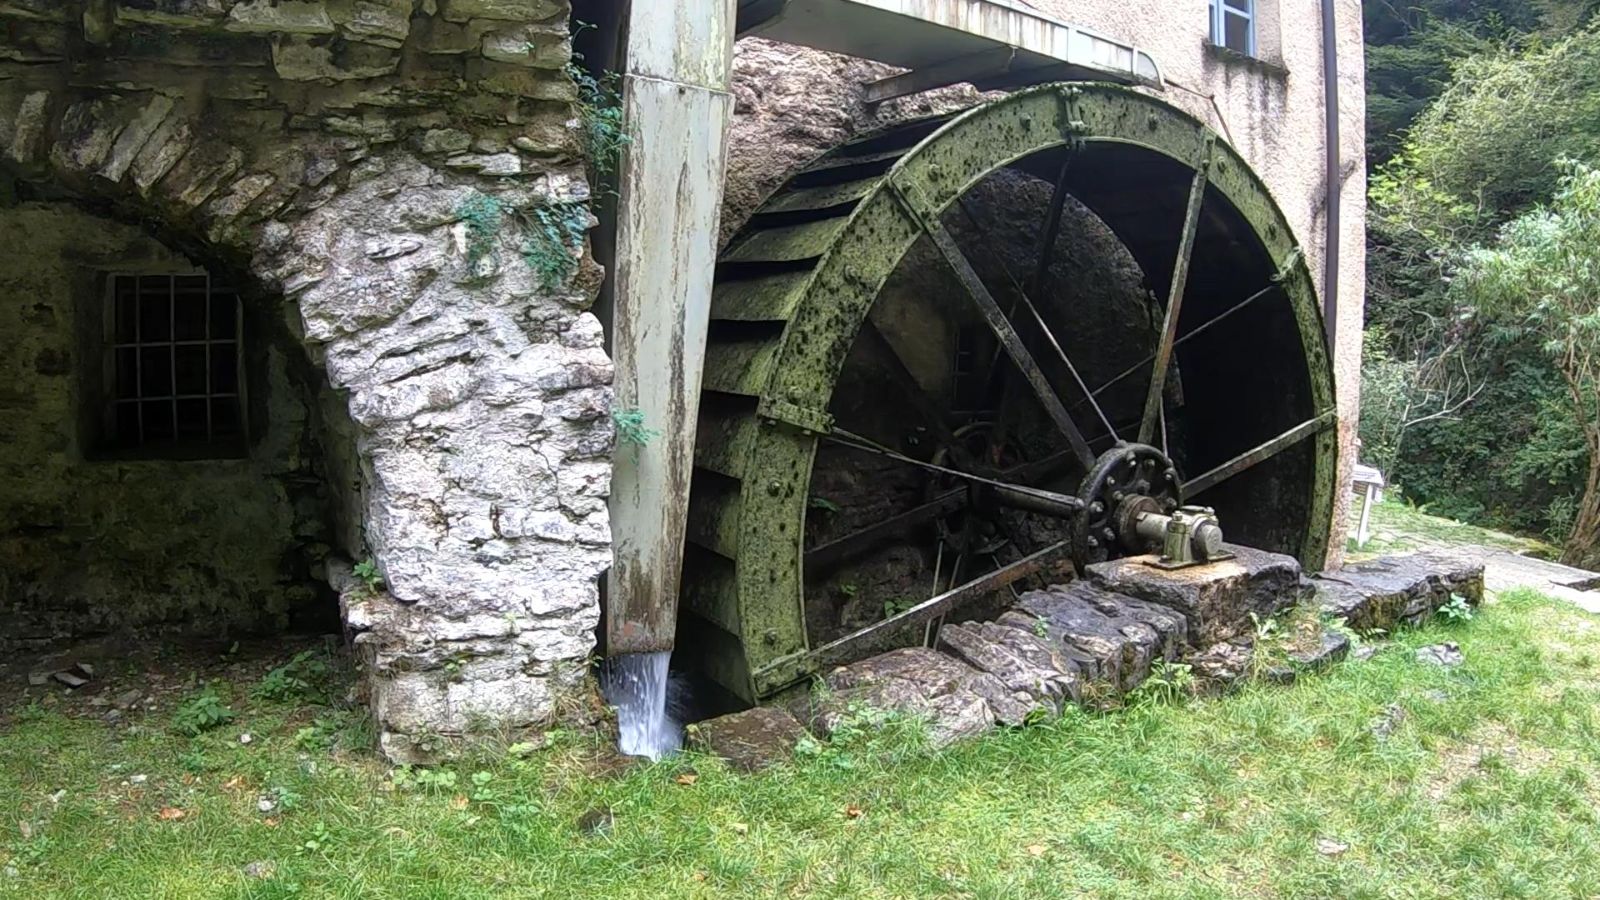 Le moulin de Bruzella, on passe ensuite de la préhistoire à la roue.